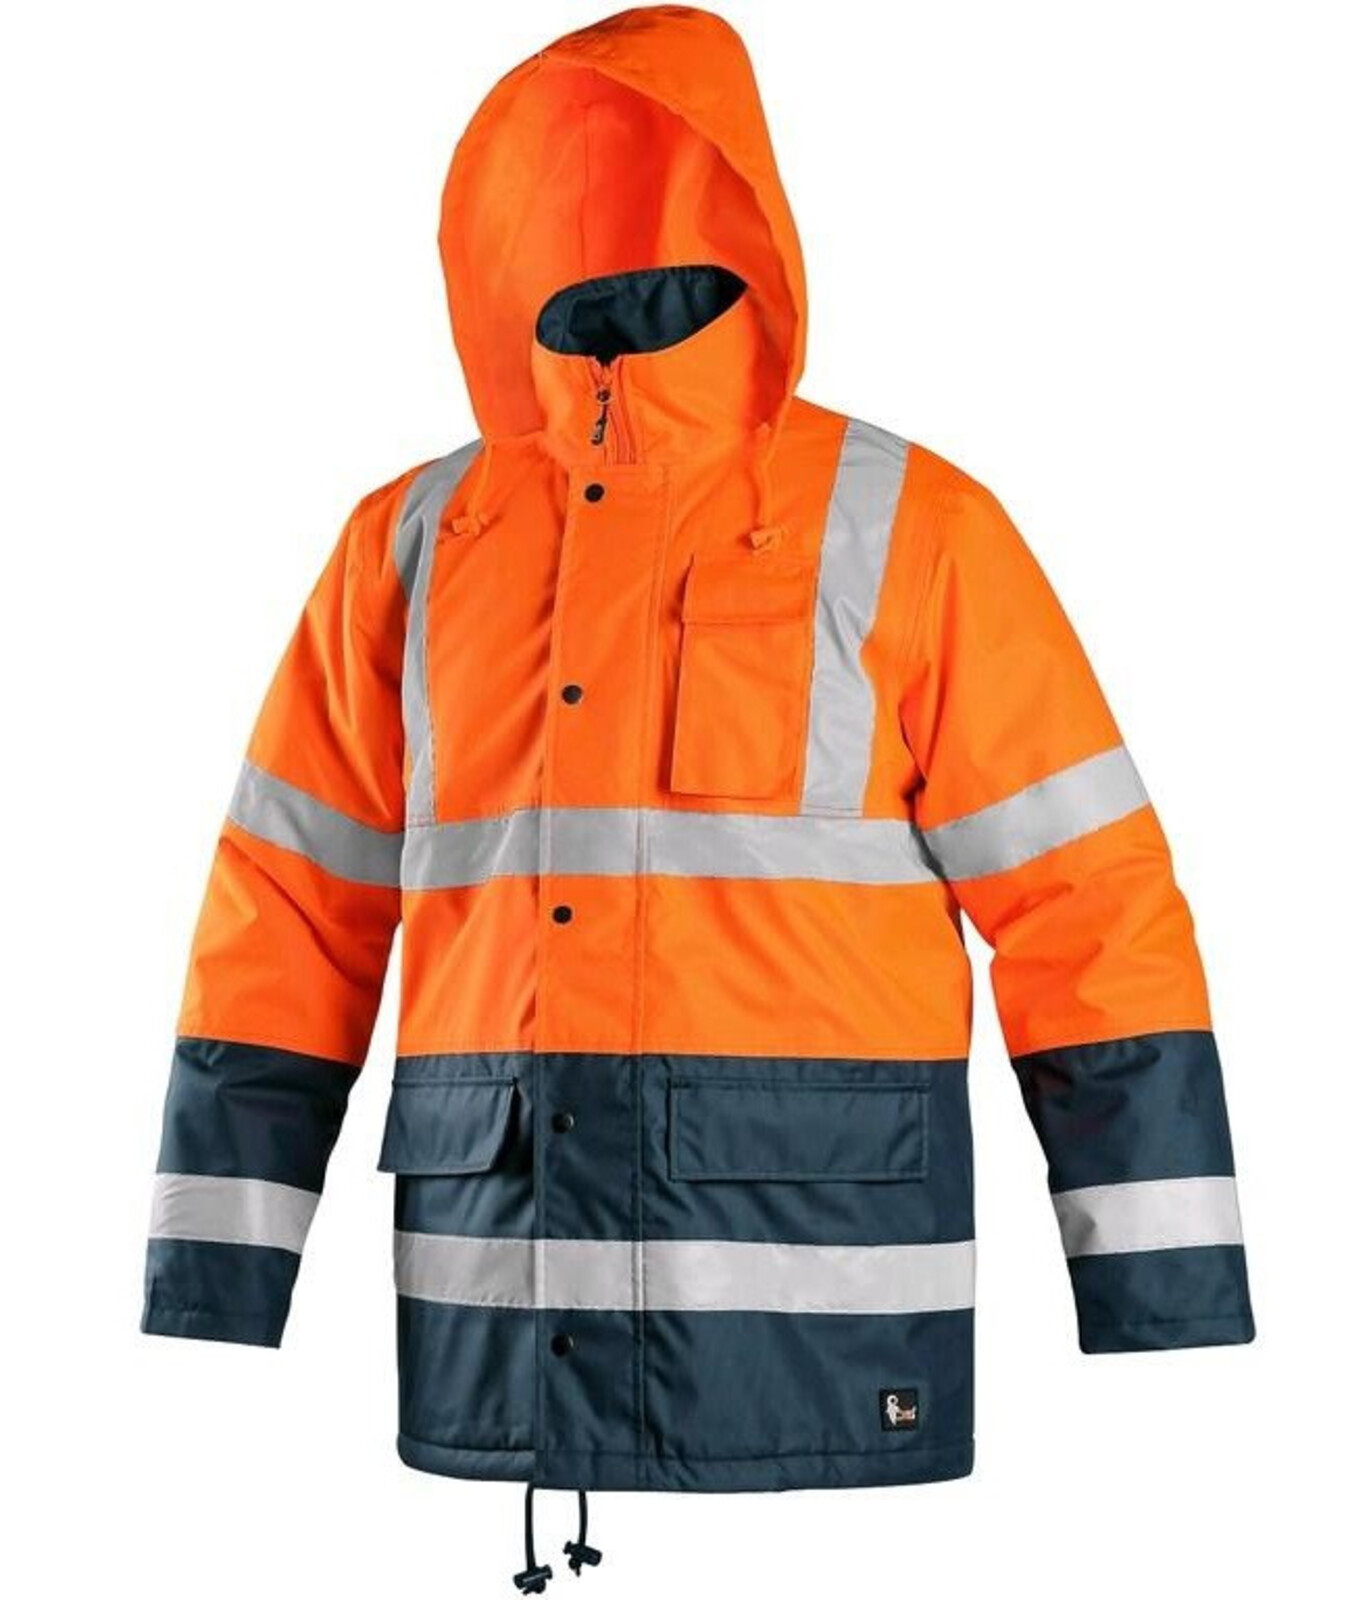 Pánska zateplená reflexná pracovná bunda CXS Oxford - veľkosť: M, farba: oranžová/navy